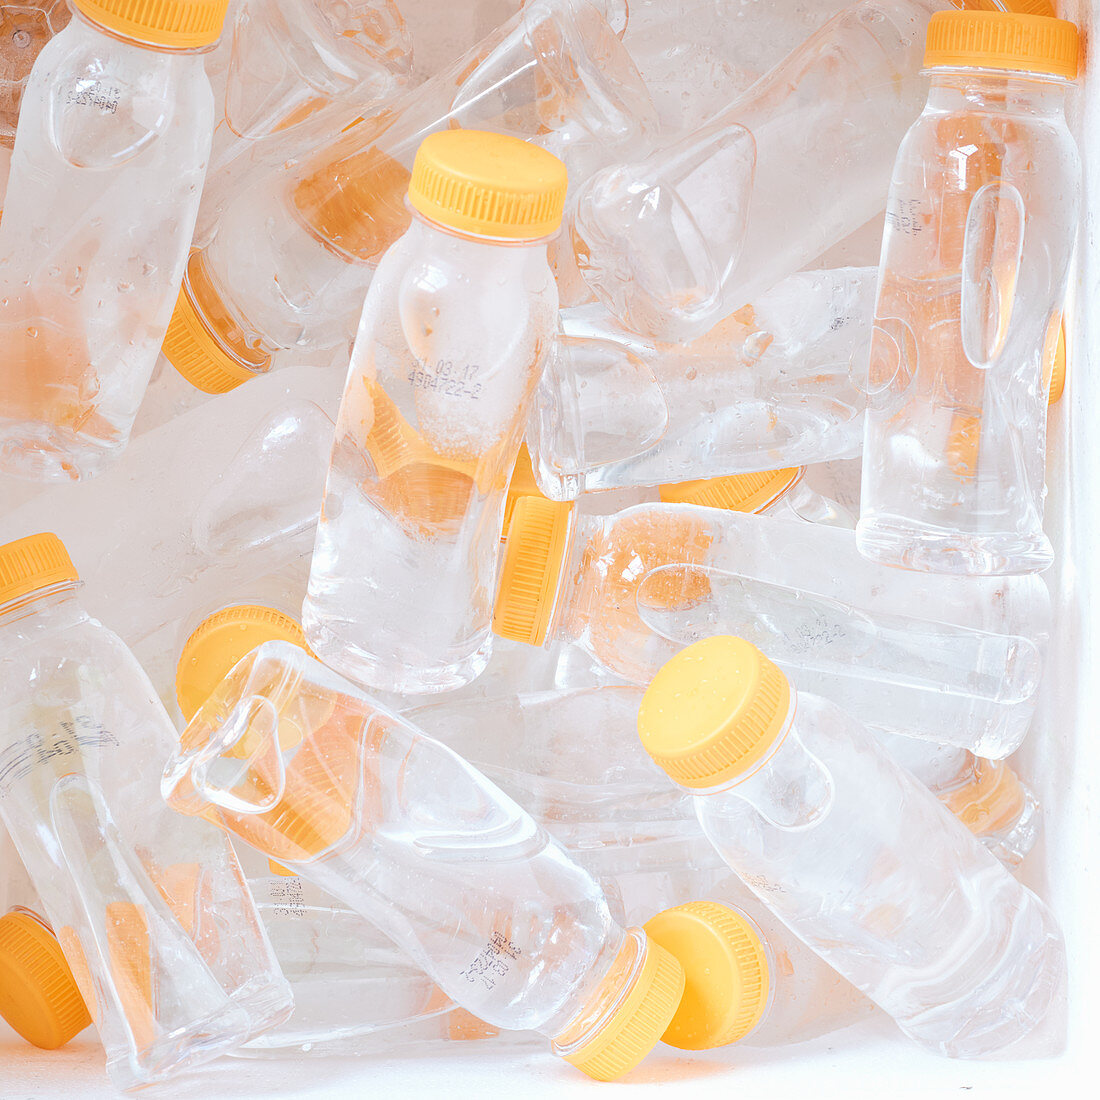 Gekühlte Wasserflaschen aus Plastik